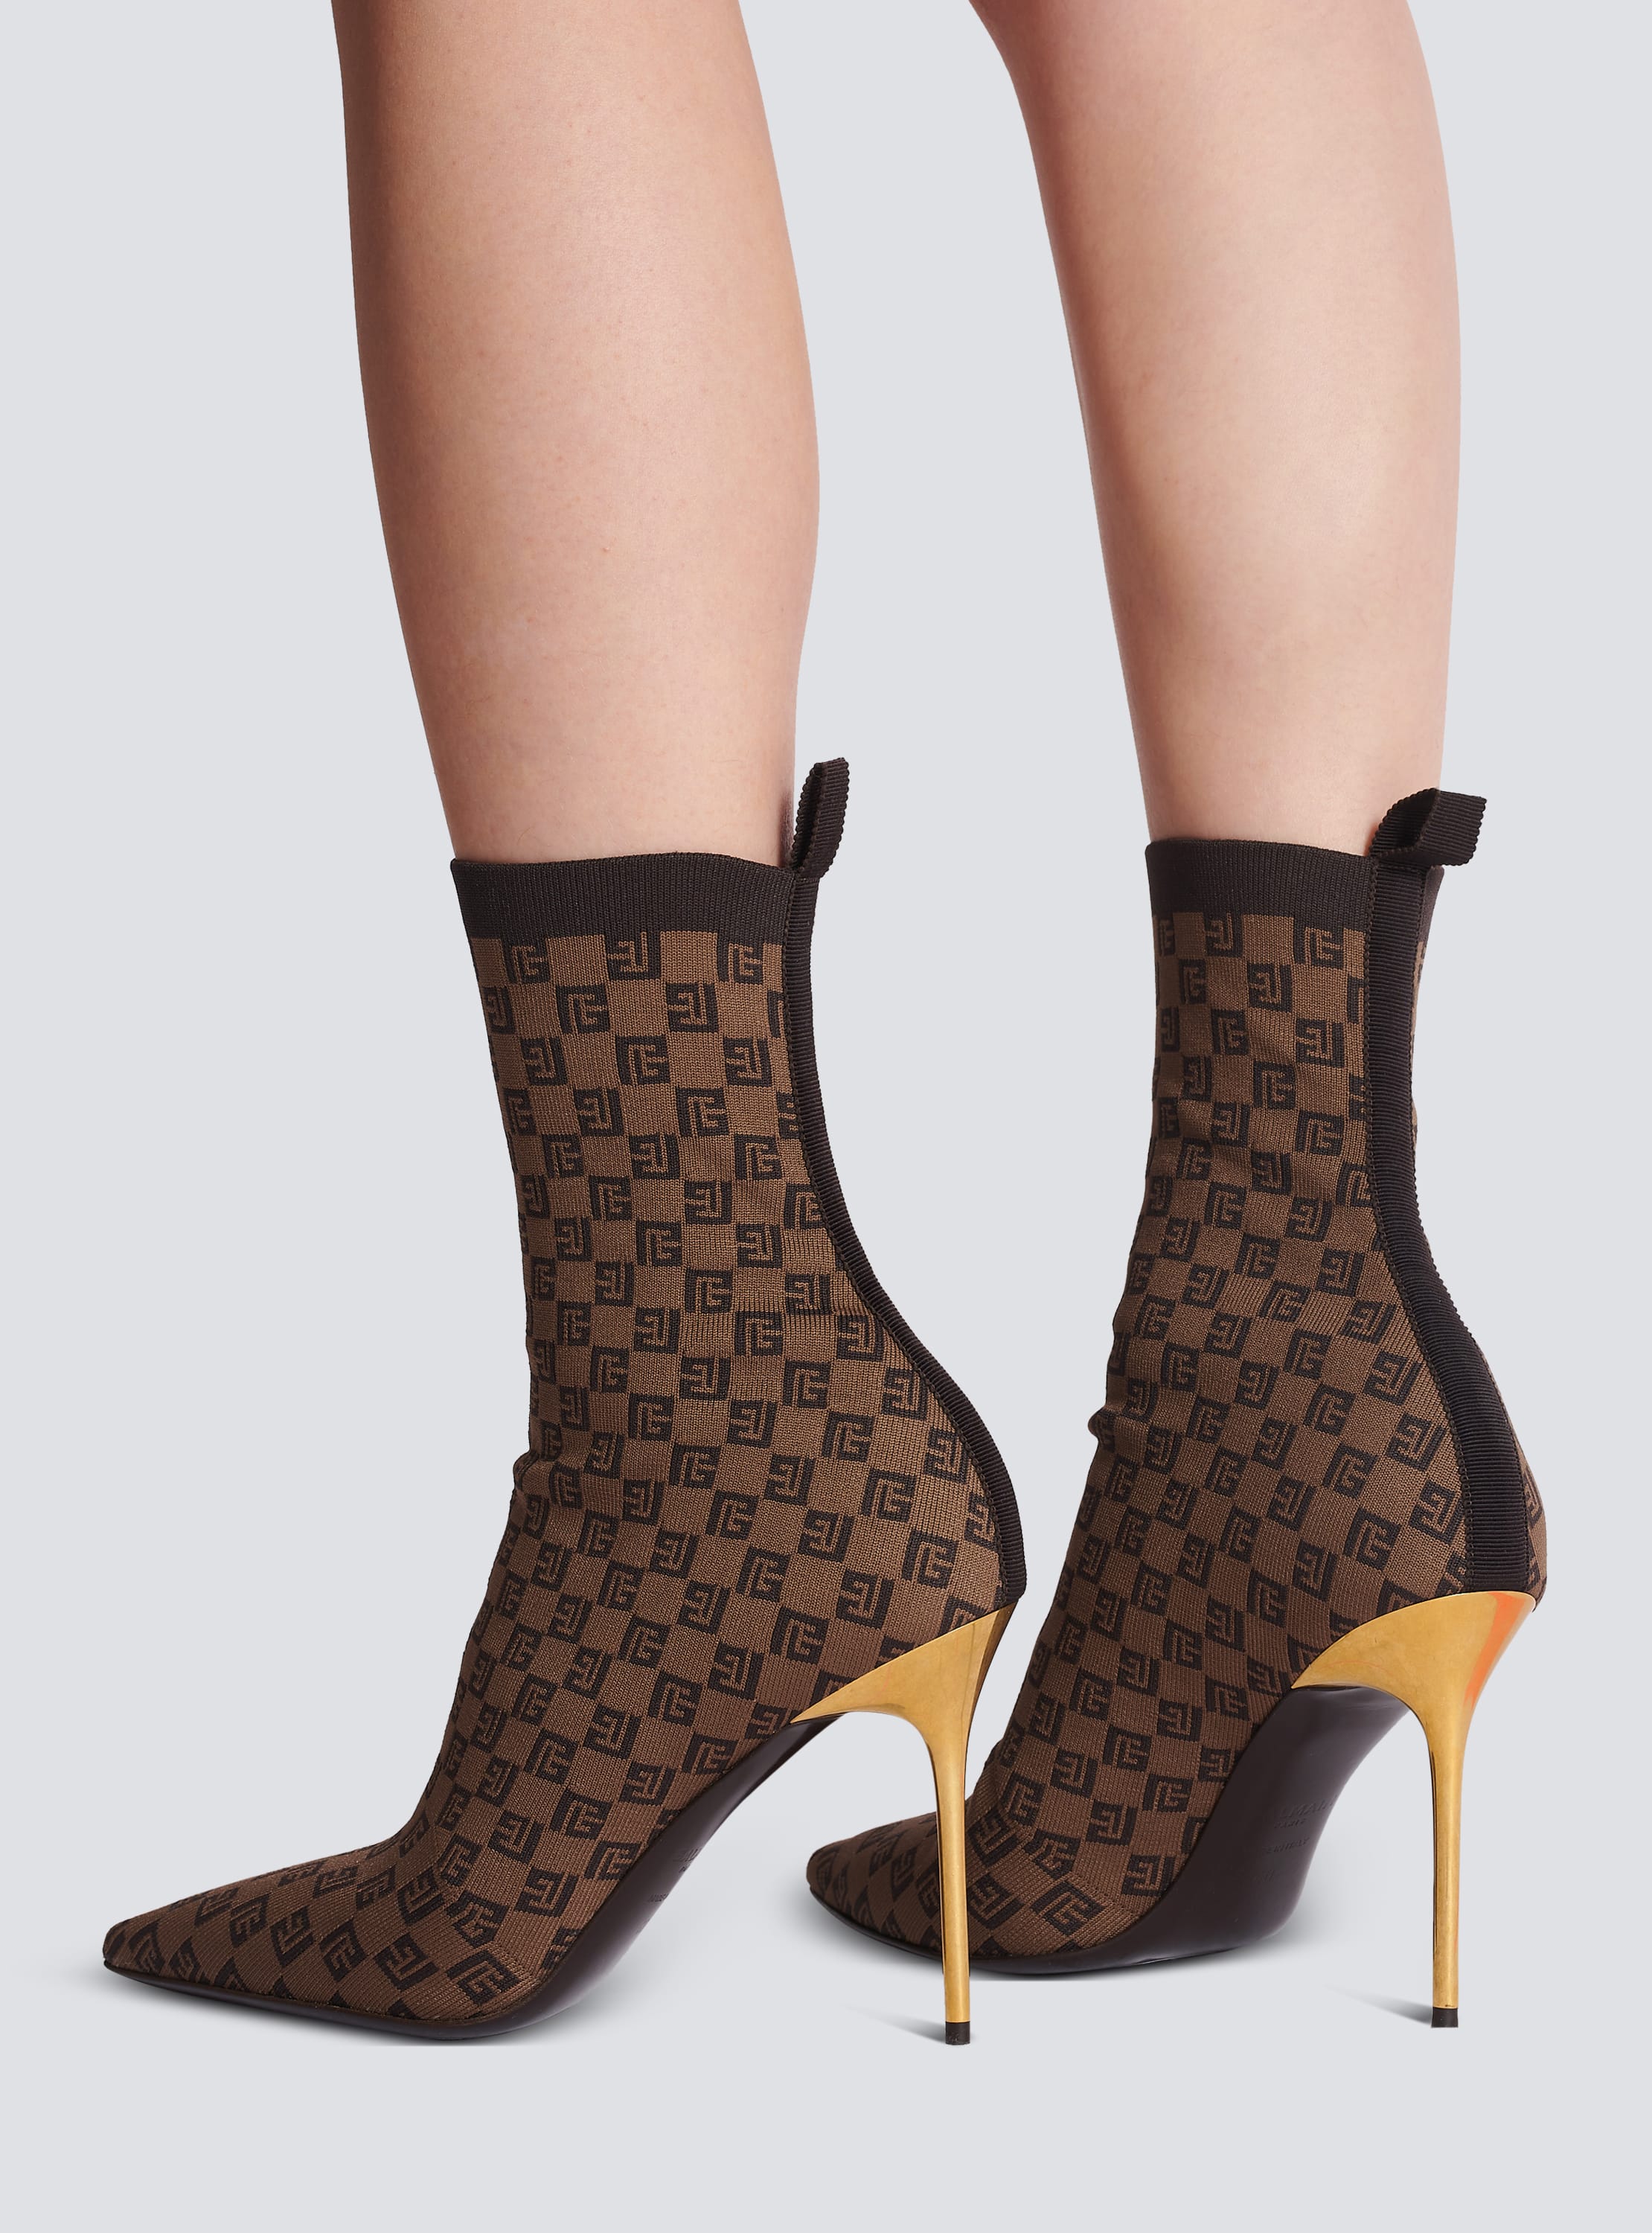 Women's Louis Vuitton Signature Ankle Boots